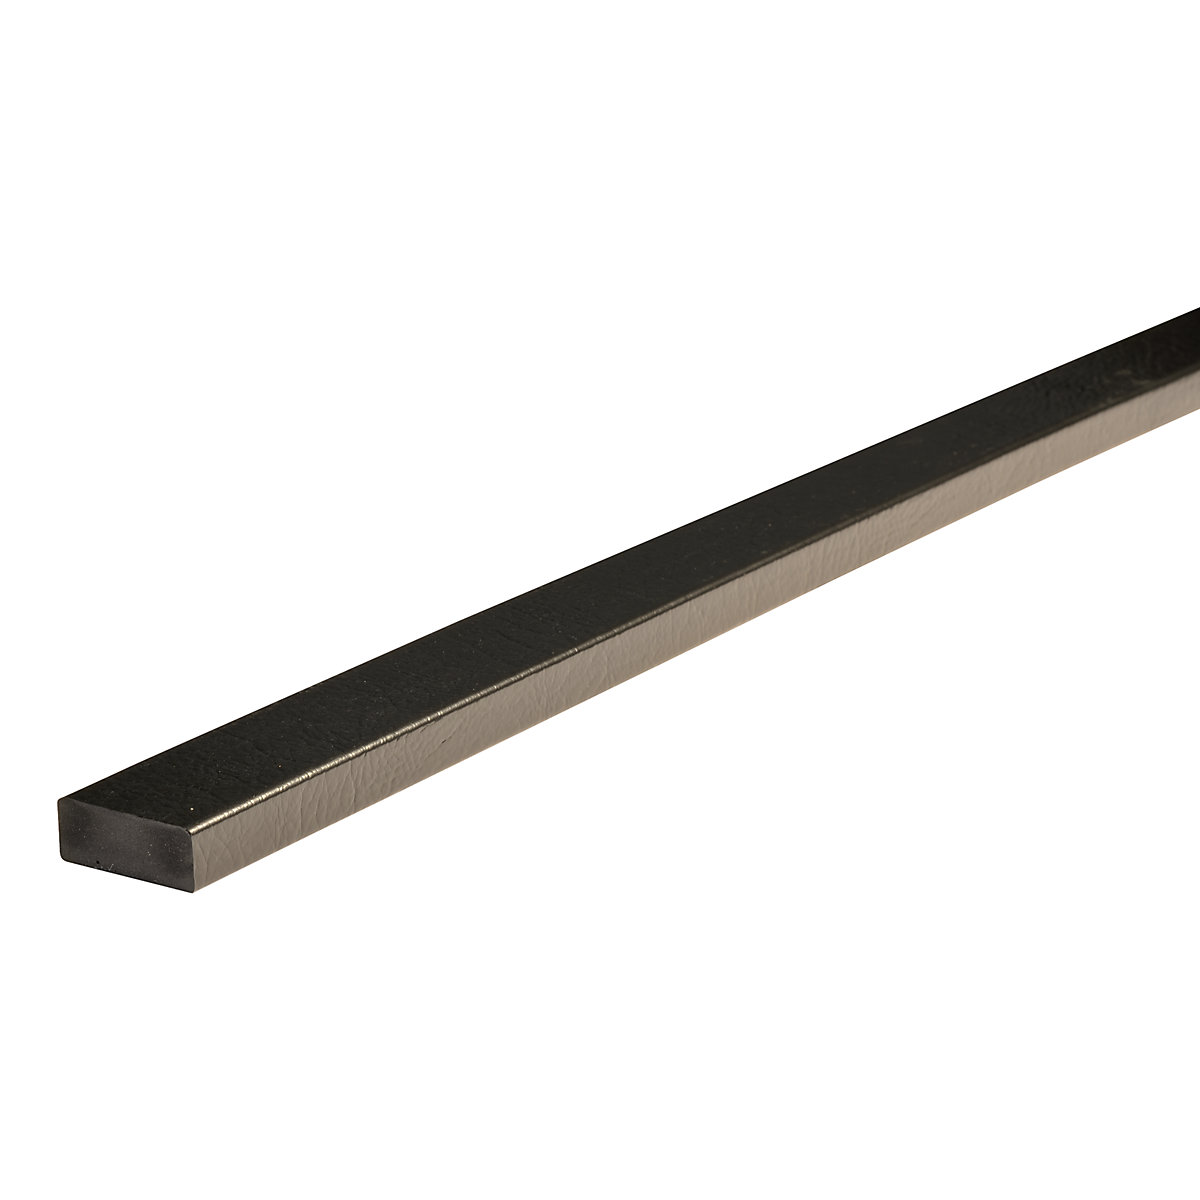 Knuffi®-oppervlaktebescherming – SHG, type D, stuk van 1 m, magneet, zwart-21